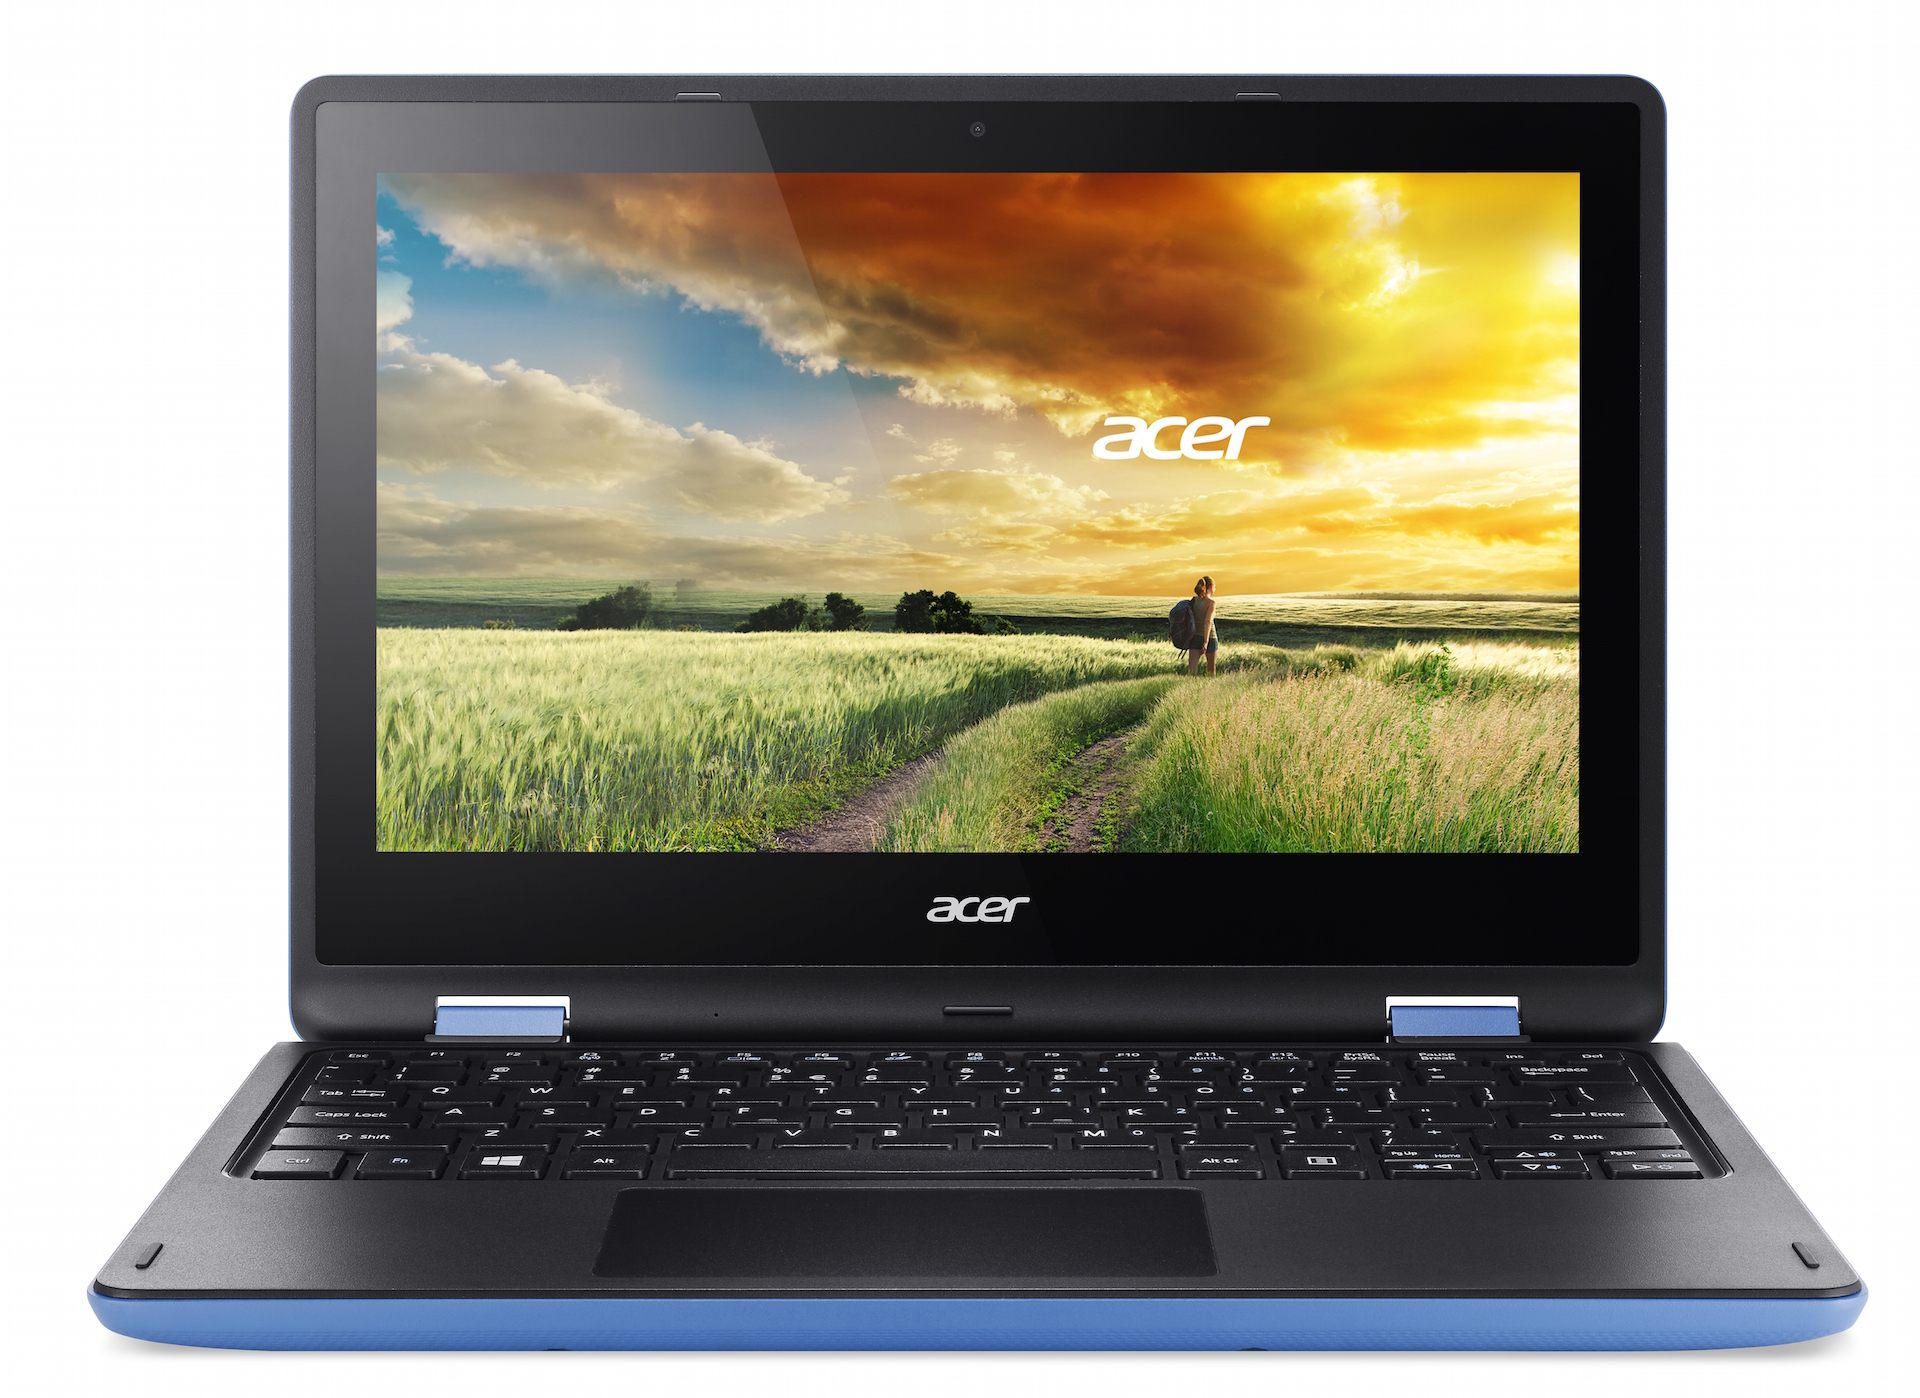 Ноутбук купить в кургане. Ноутбук Acer Aspire r3-131t-c81r (NX. G11er.006). Acer Aspire r3-131t-c81r (NX. G11er.006). Acer Aspire r3-131t-c81r. Ноутбук Aspire r3-131t-c81r (NX.g11er.006).